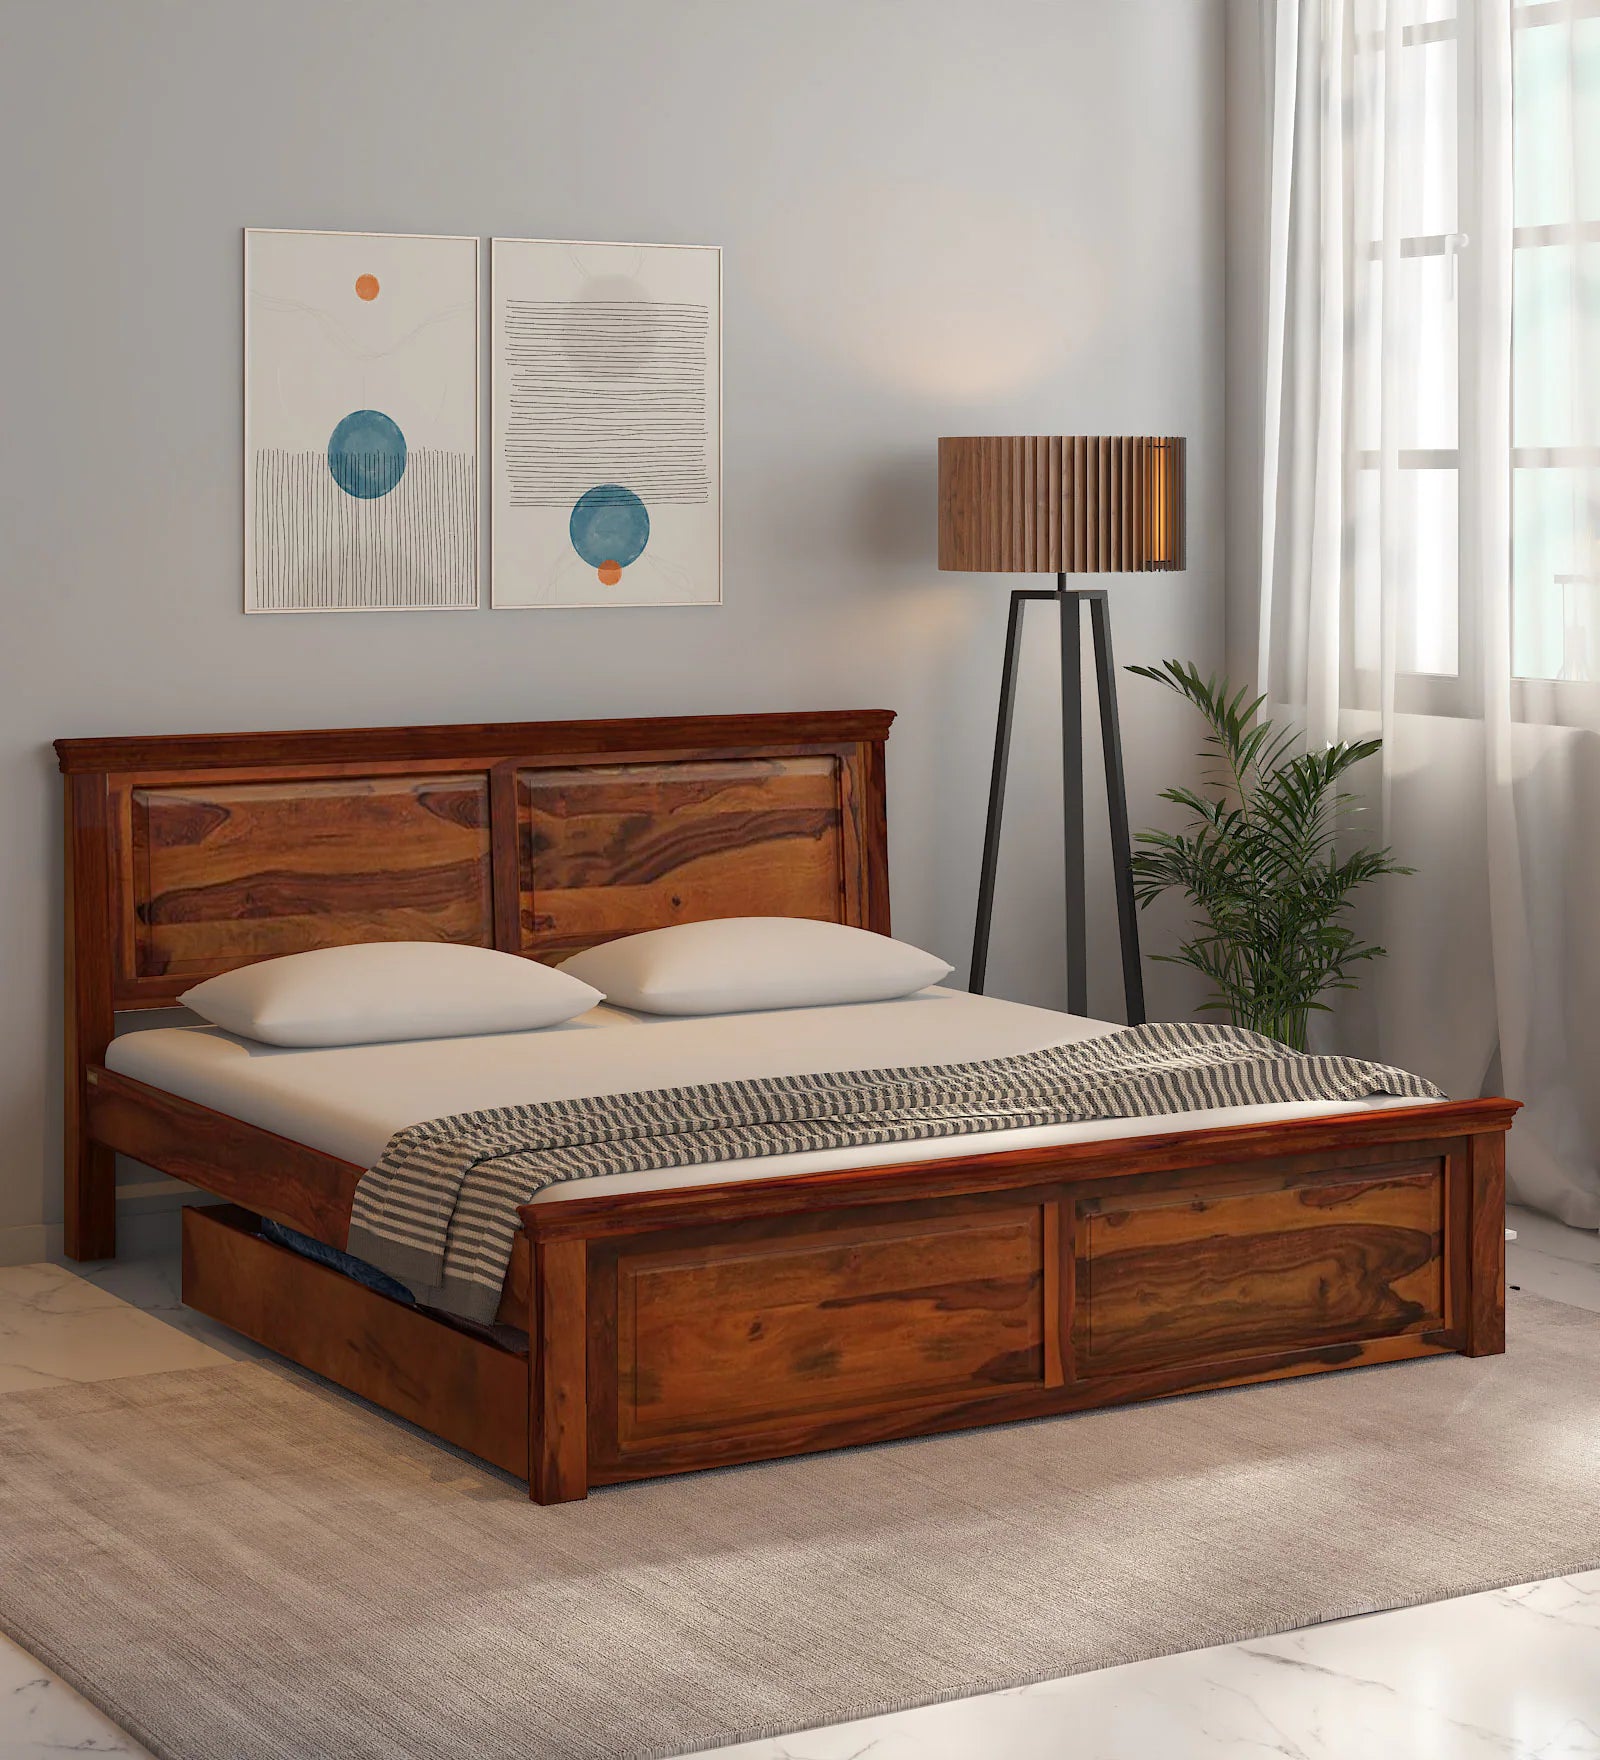 Vandena Solid Wood Bed With Drawer Storage In Honey Oak Finish By Rajwada - Rajwada Furnish